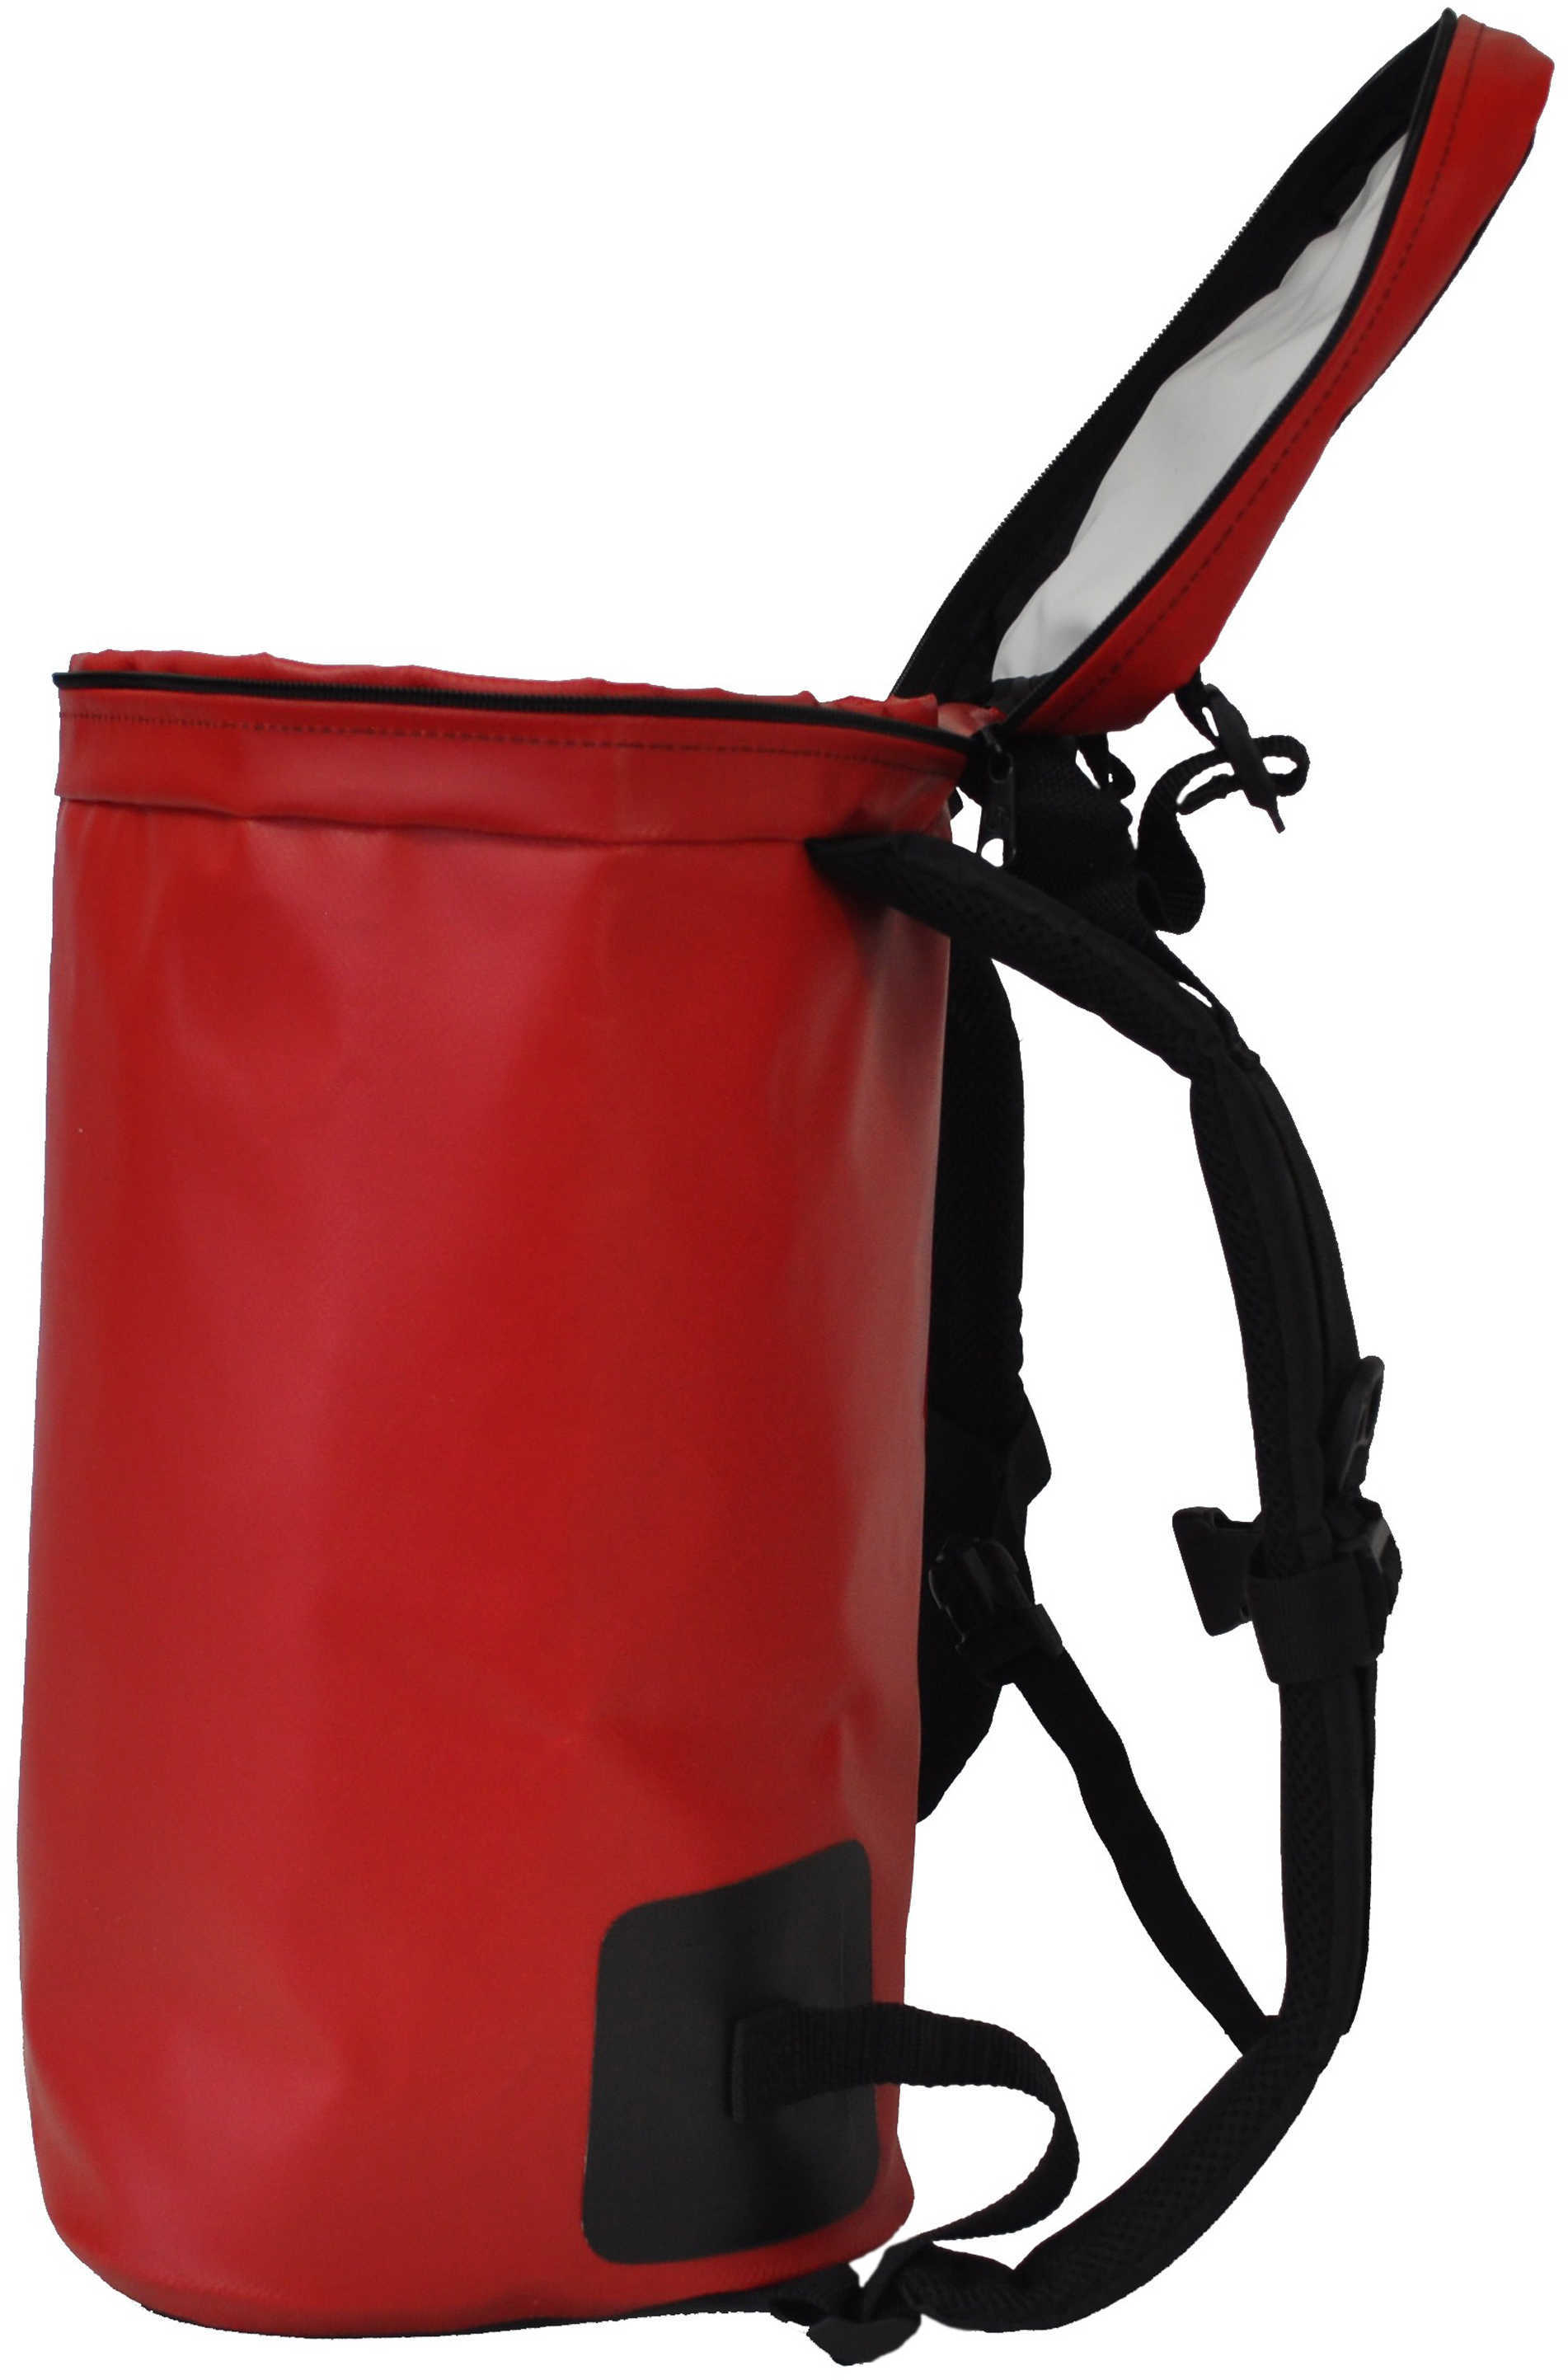 Frostpak Coolpack Backpack Cooler Red Md: 024901